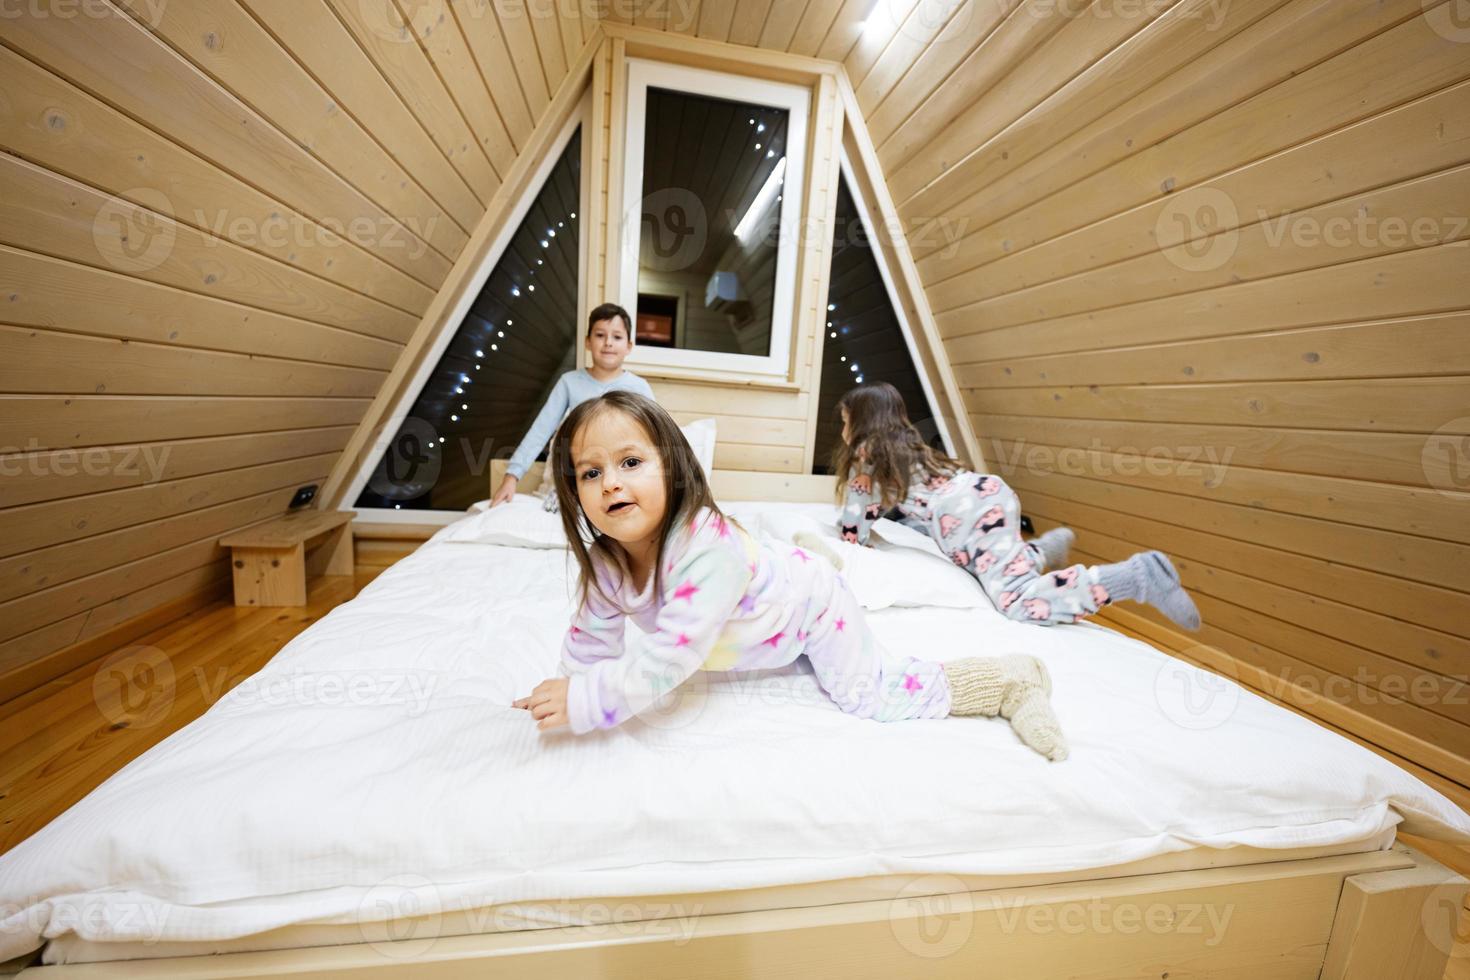 bambini nel morbido caldo pigiama giocando a di legno cabina casa. concetto di infanzia, tempo libero attività, felicità. fratello e sorelle avendo divertimento e giocando insieme. foto